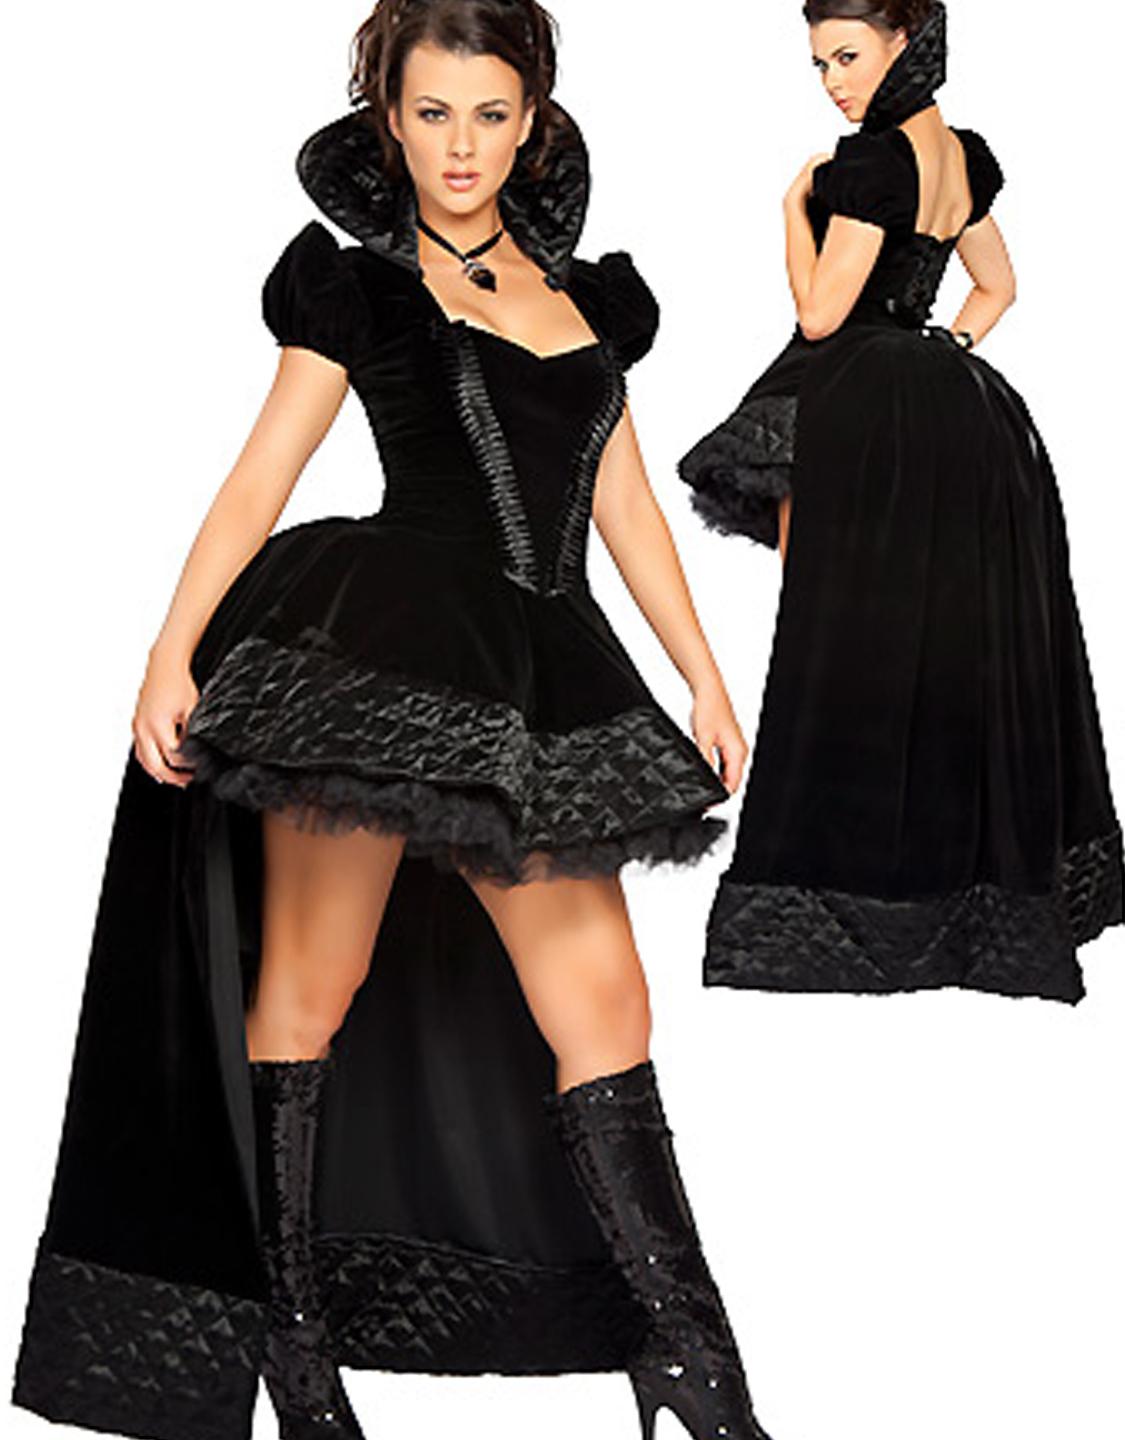 Black Fairy Tales Costume